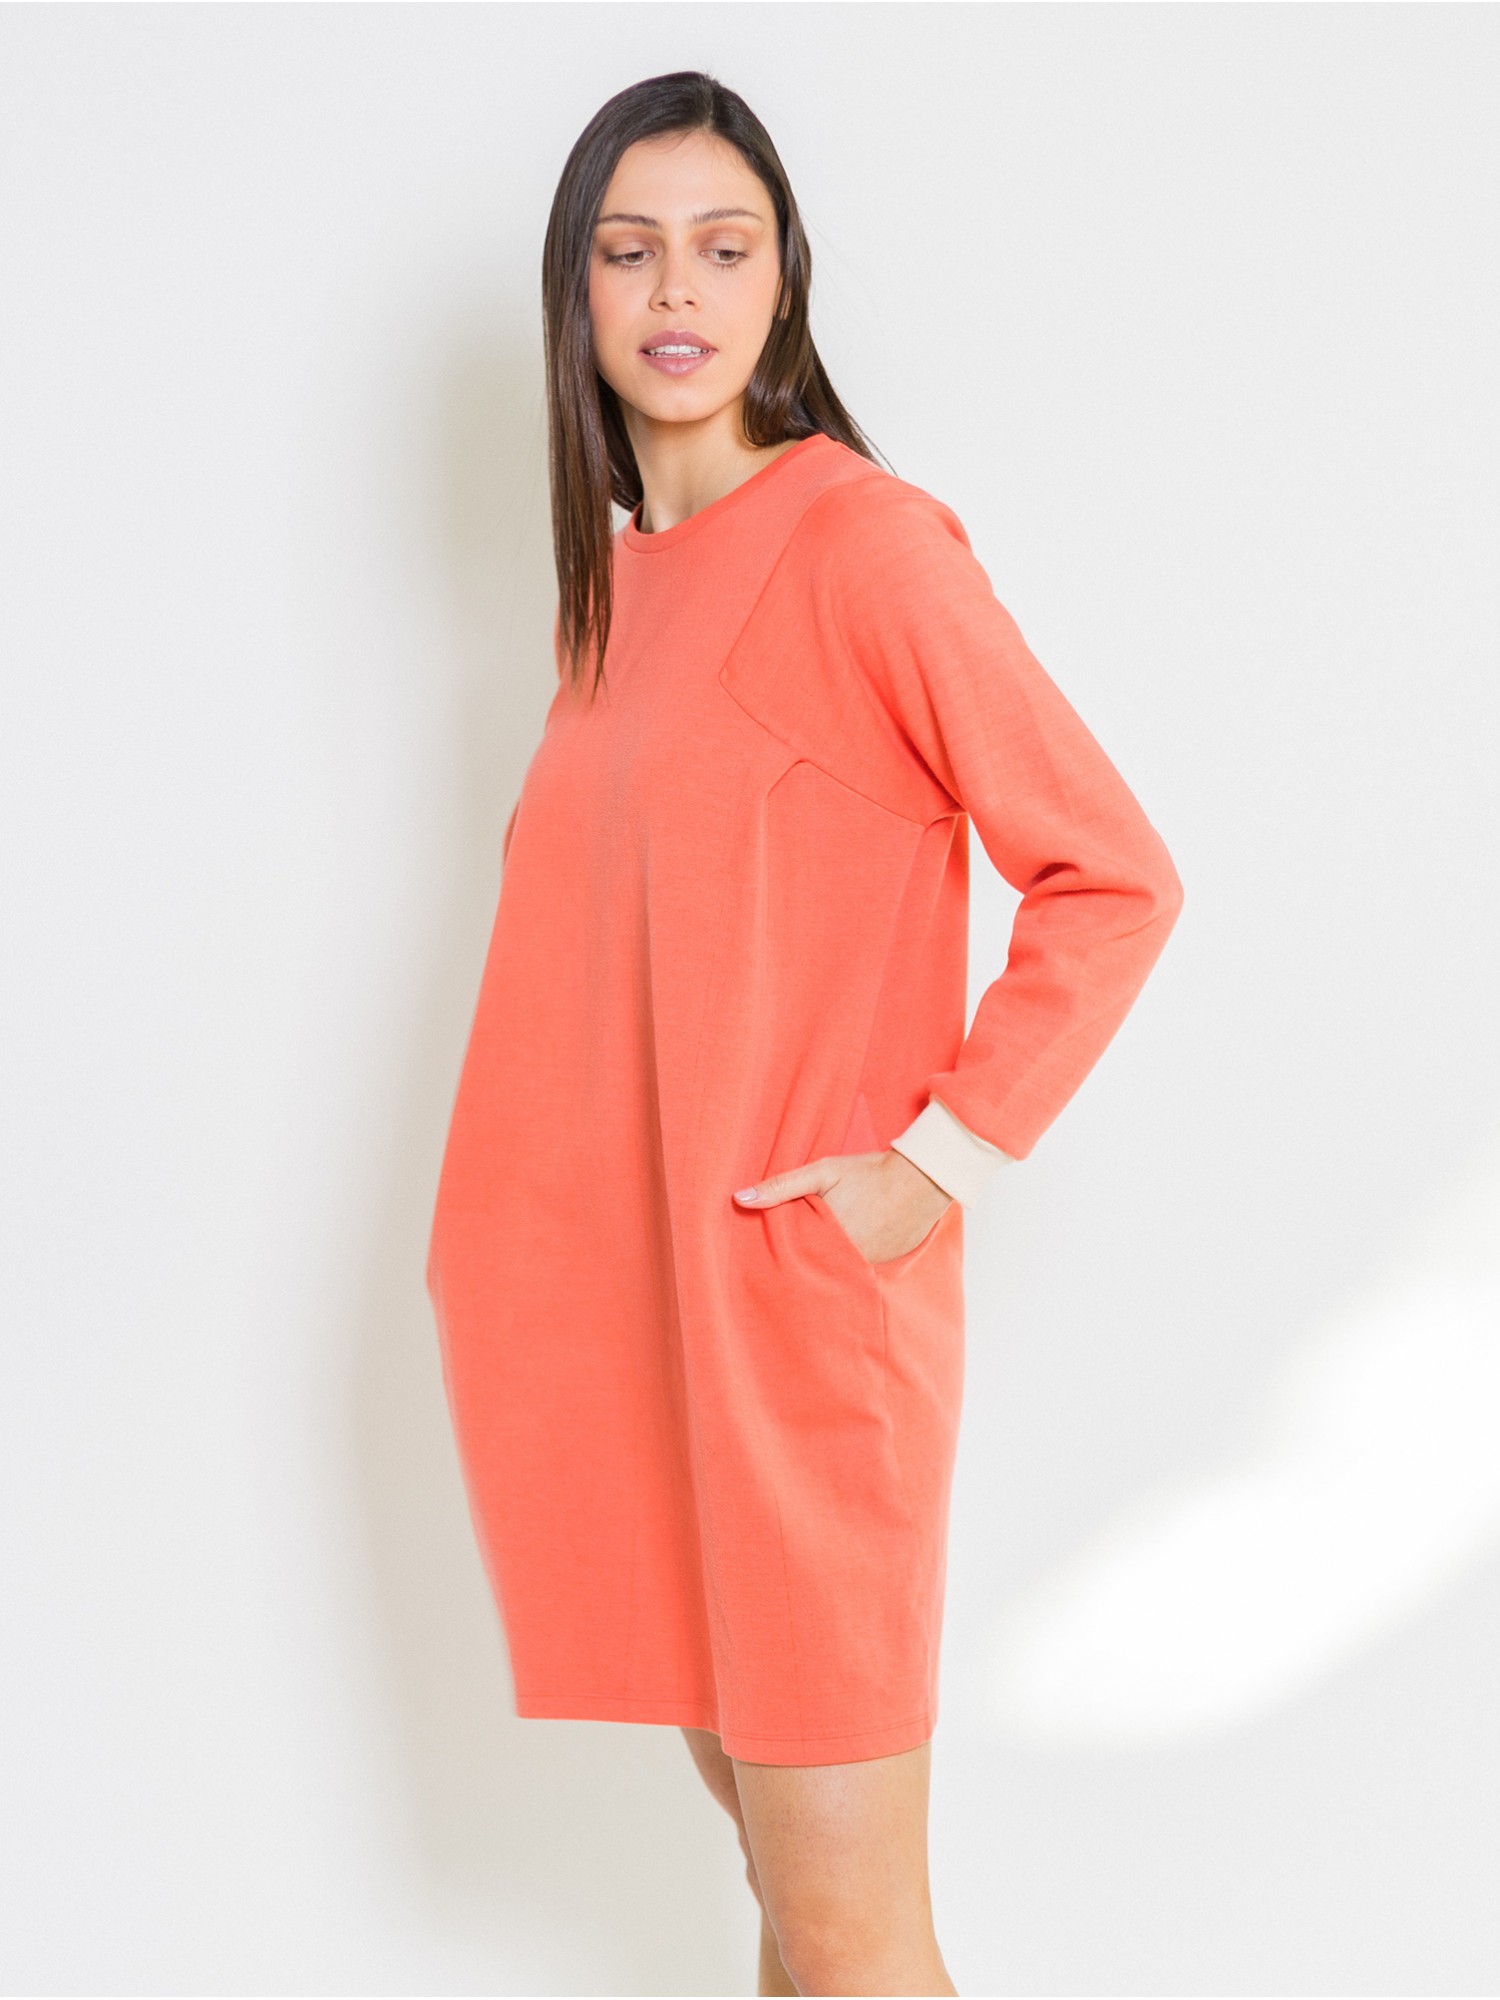 Vestido corto Bilion PAN Producto Básico en shop candelascloset. Color naranja, manga larga y puños a contraste para mujer.